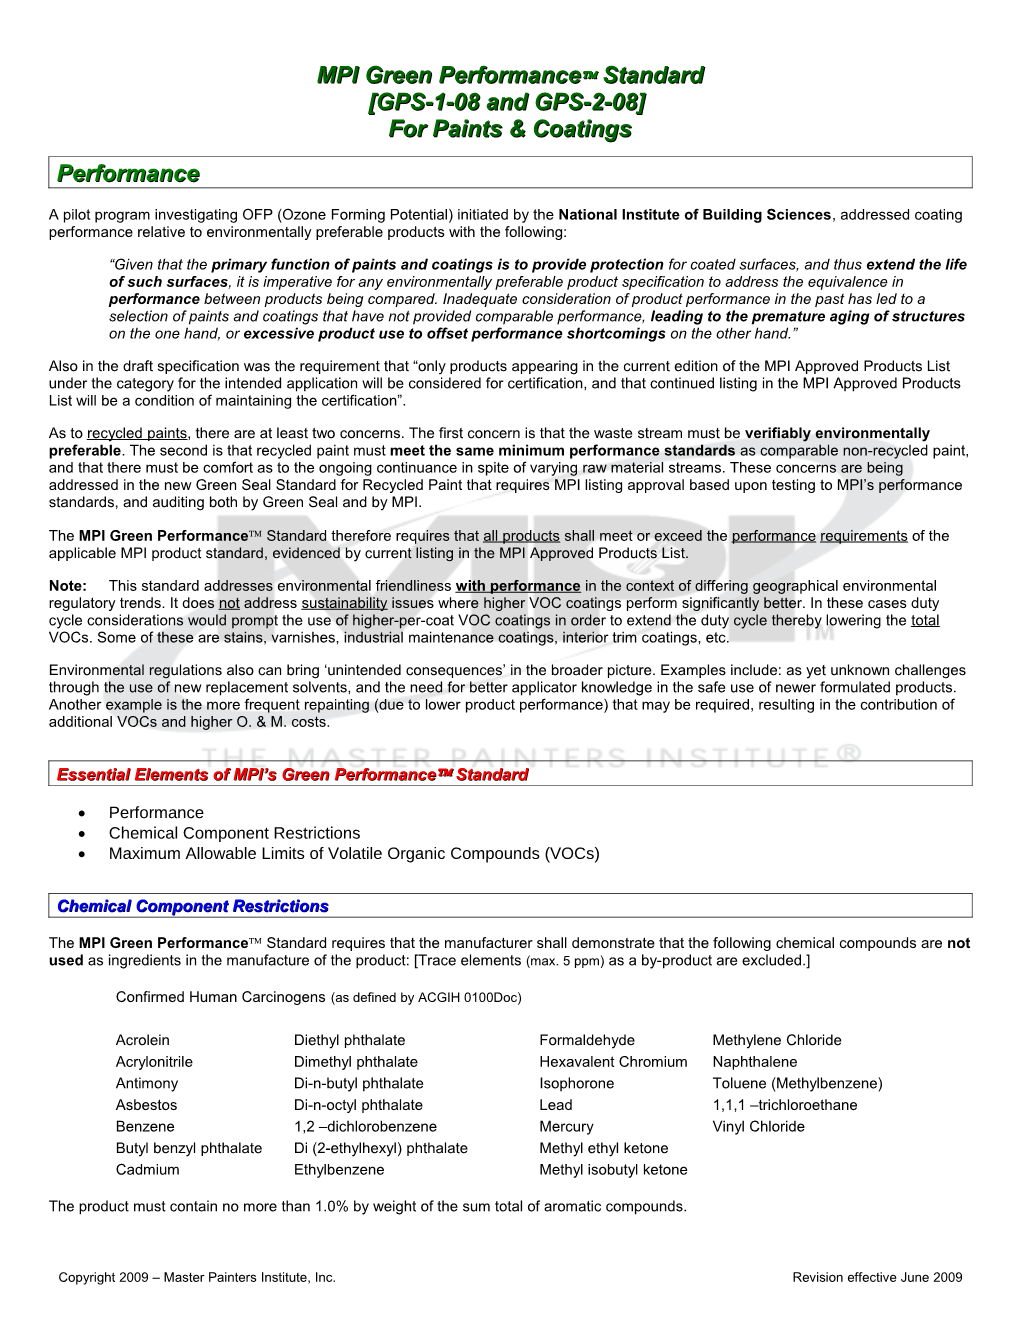 MPI Environmental Standards (DRAFT)